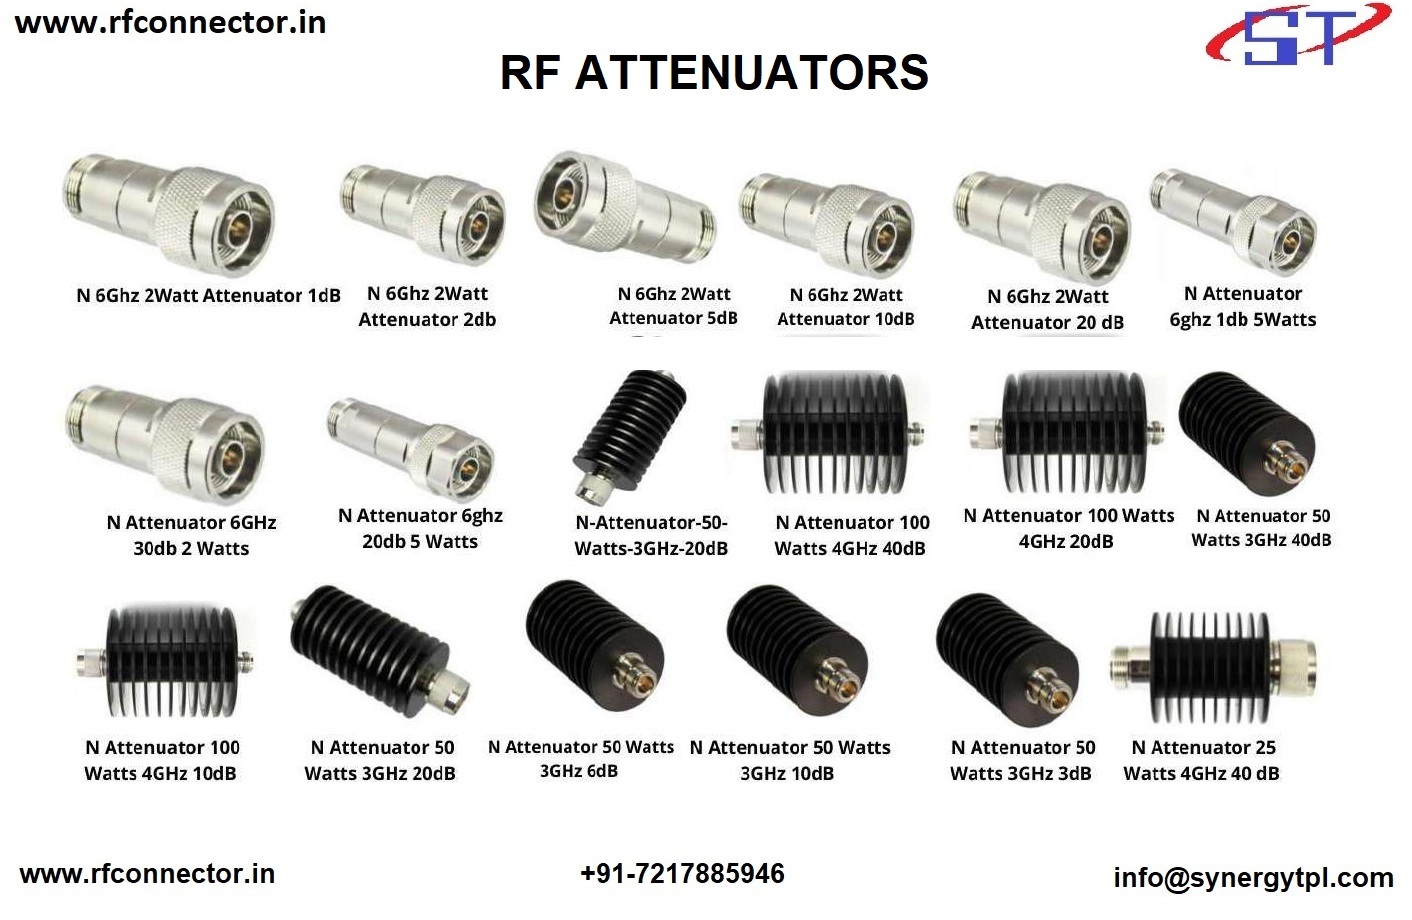 7db 1watt attenuator RF ATTENUATOR